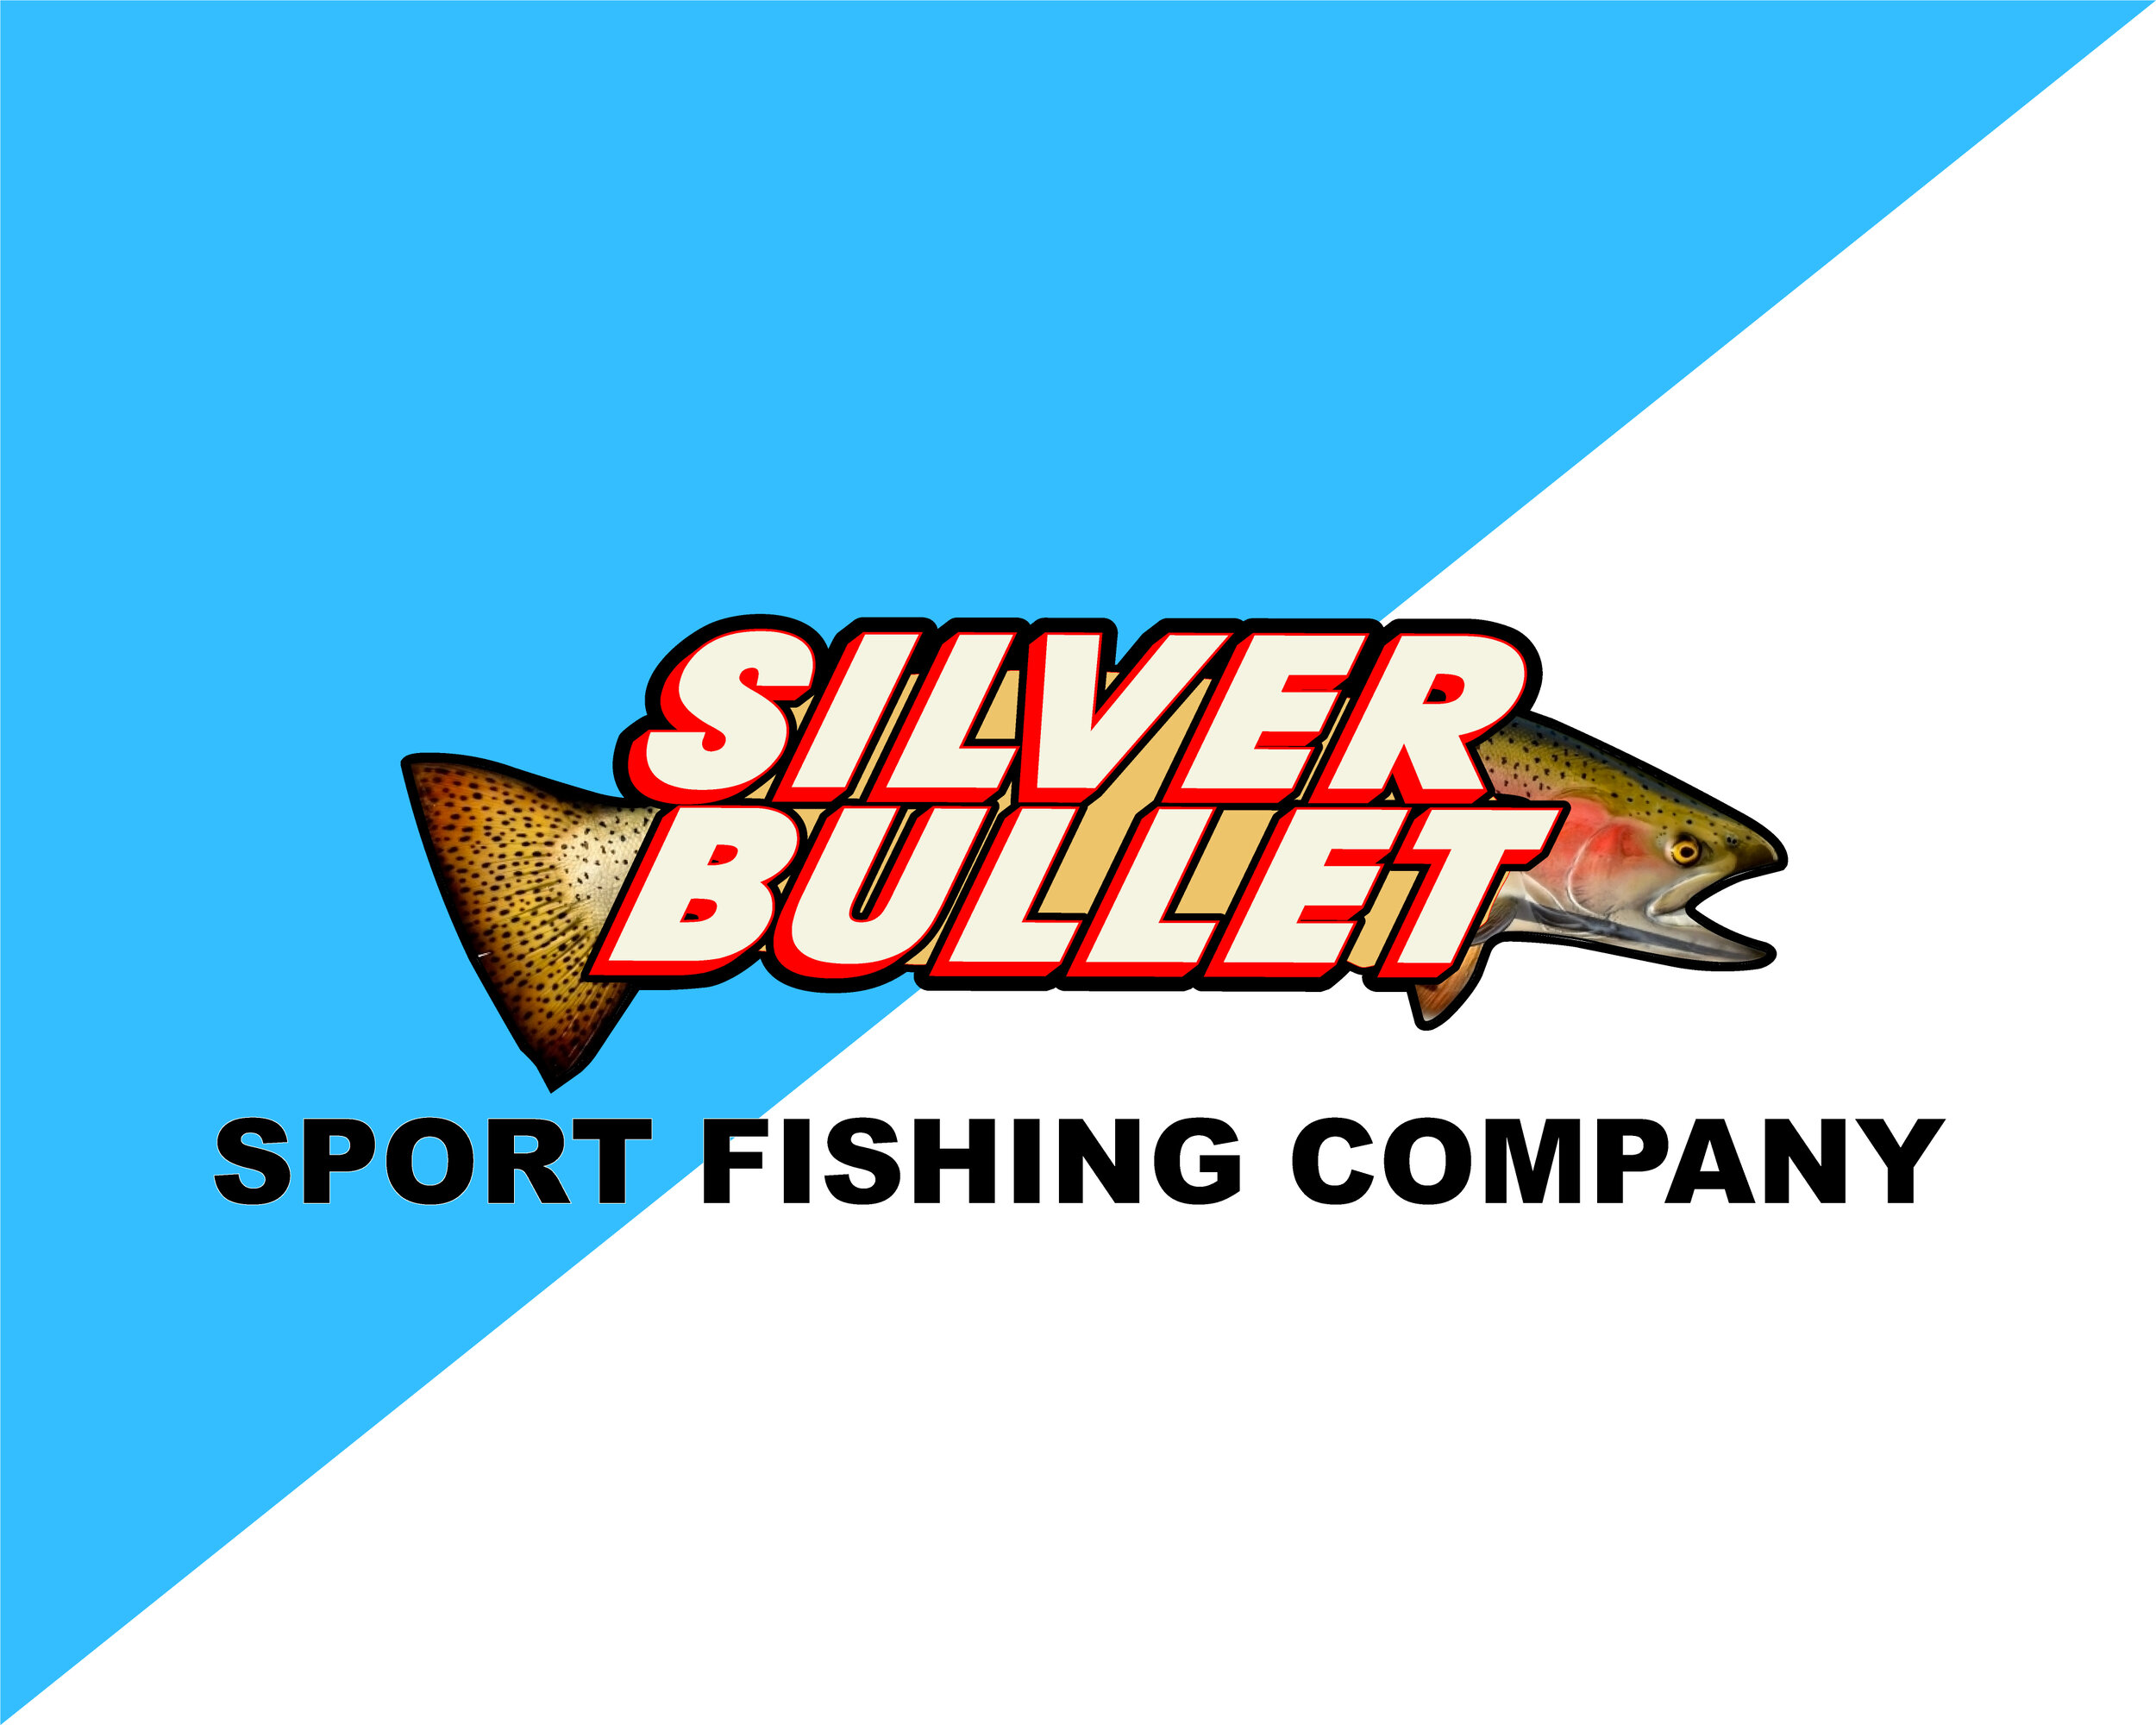 Silver Bullet Sport Fishing Co.